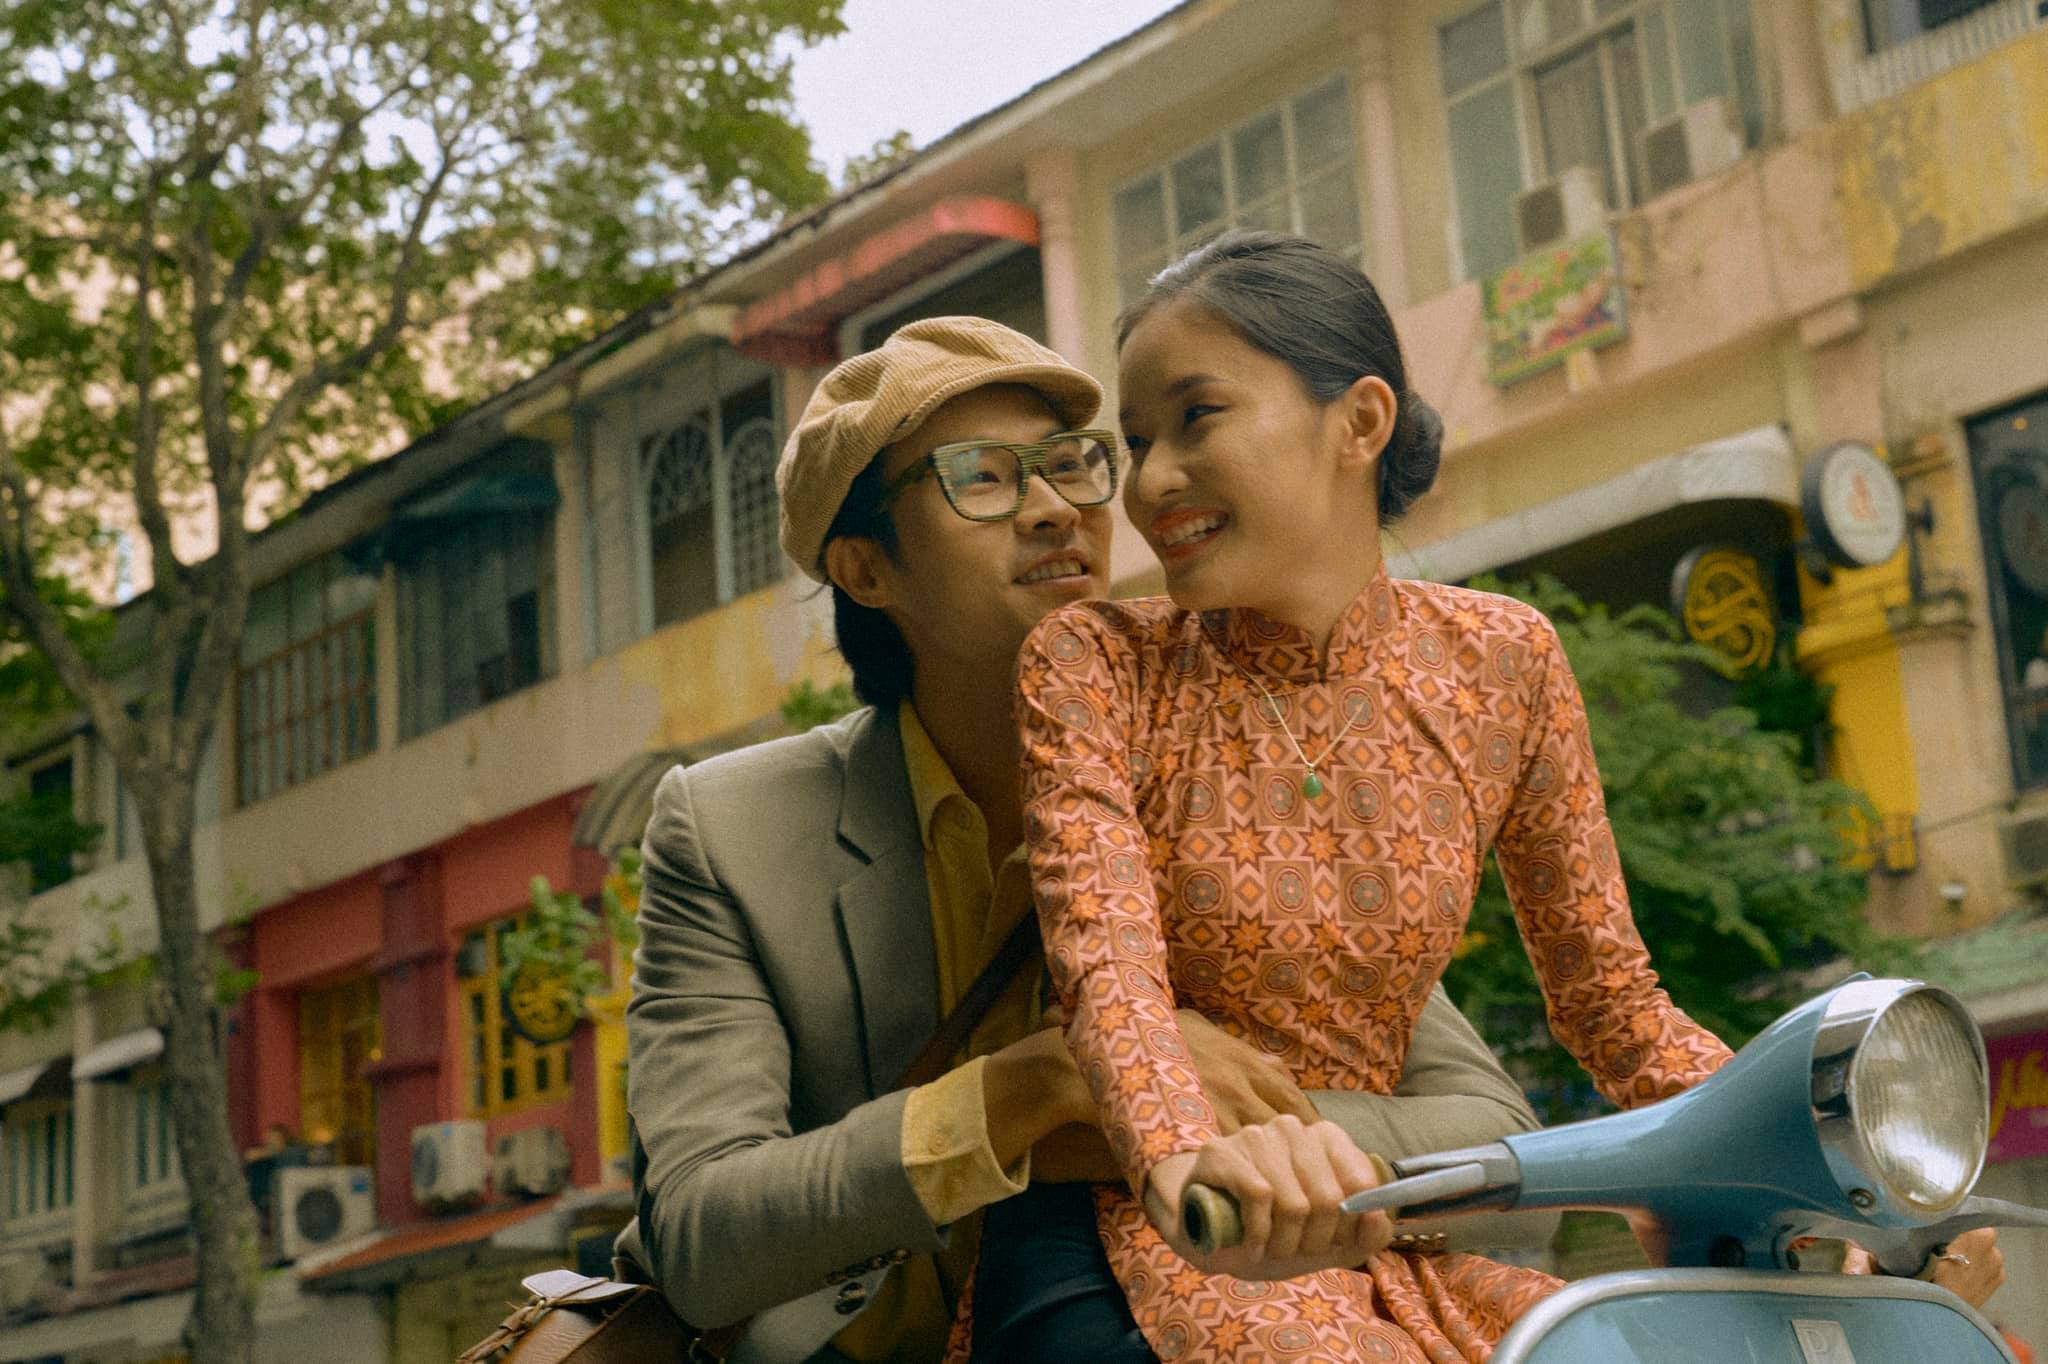 Hình ảnh cưới tuyệt đẹp tại Sài Gòn sẽ khiến bạn mê mẩn ngay từ cái nhìn đầu tiên. Với ánh nắng vàng rực rỡ của thành phố, đôi uyên ương sẽ trở thành tâm điểm thu hút mọi ánh nhìn. Hãy khám phá ngay để cảm nhận sự lãng mạn và đầy cảm xúc của những khoảnh khắc đẹp nhất trong đời mình.